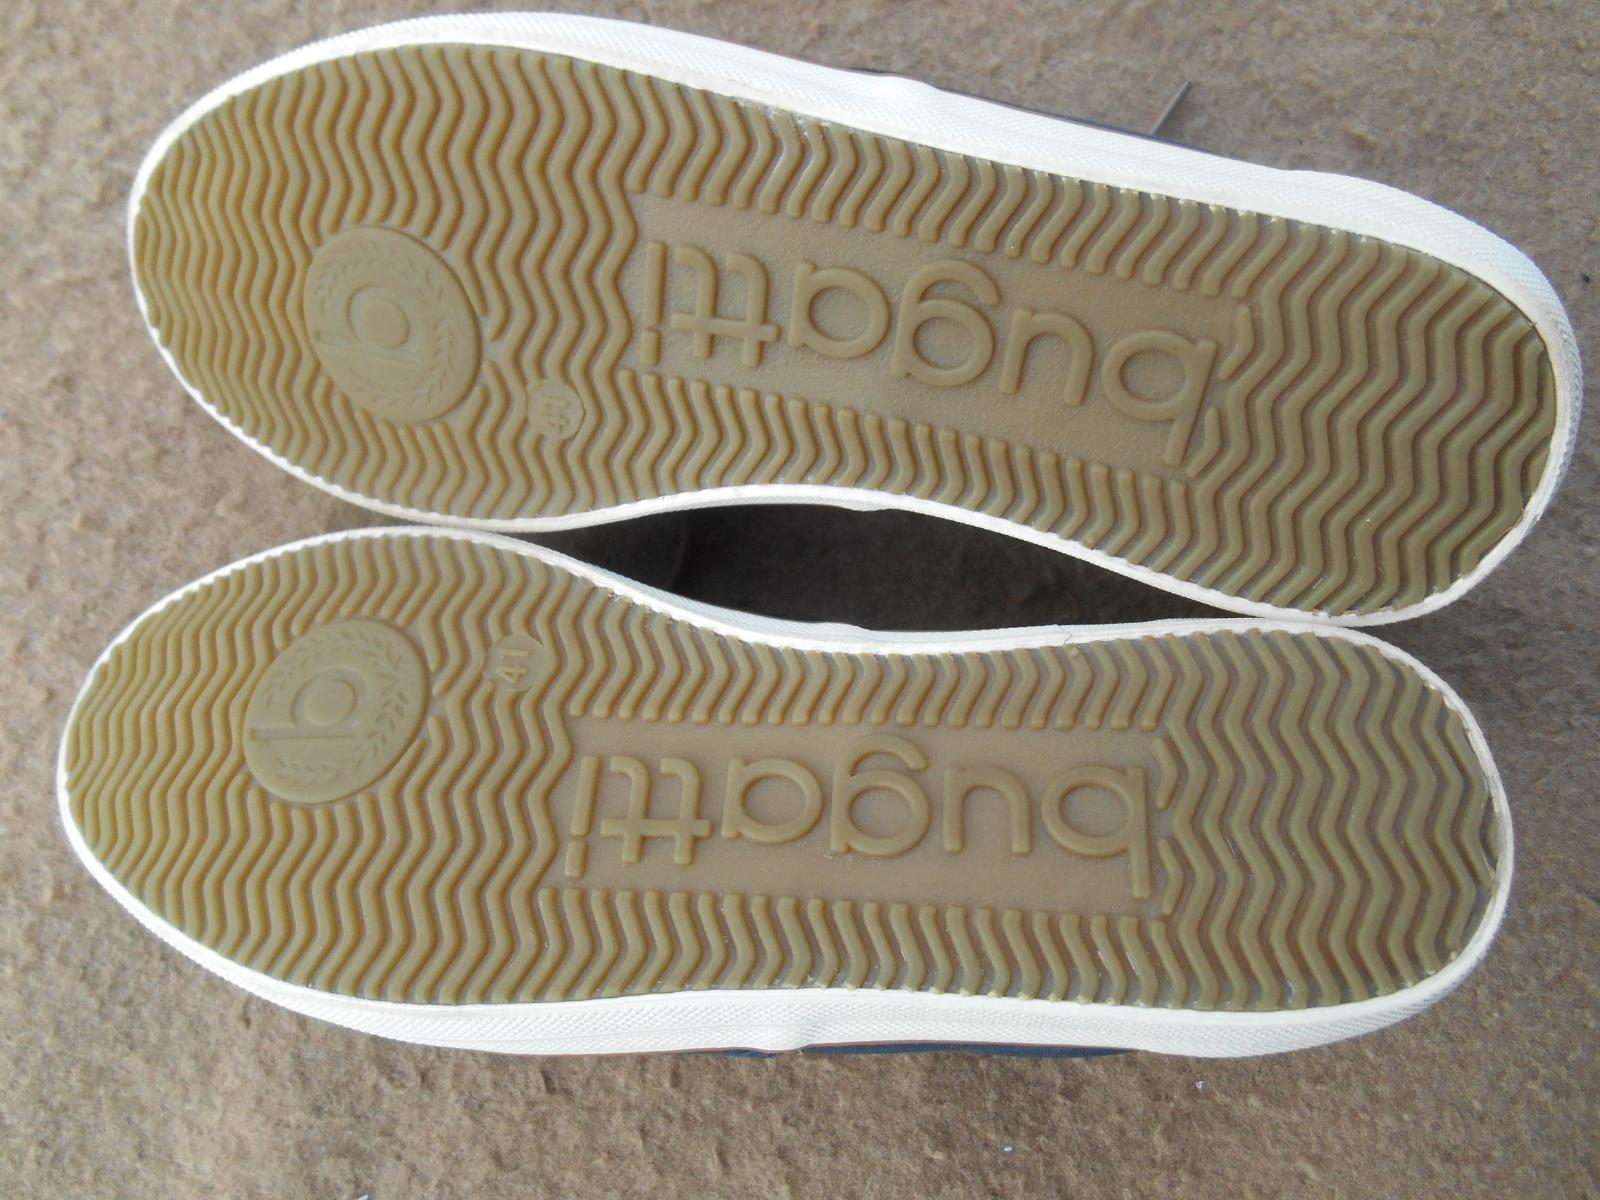 Nové pánské volnočasové boty zn.: Bugatti - vel. 41 - Oblečení, obuv a doplňky